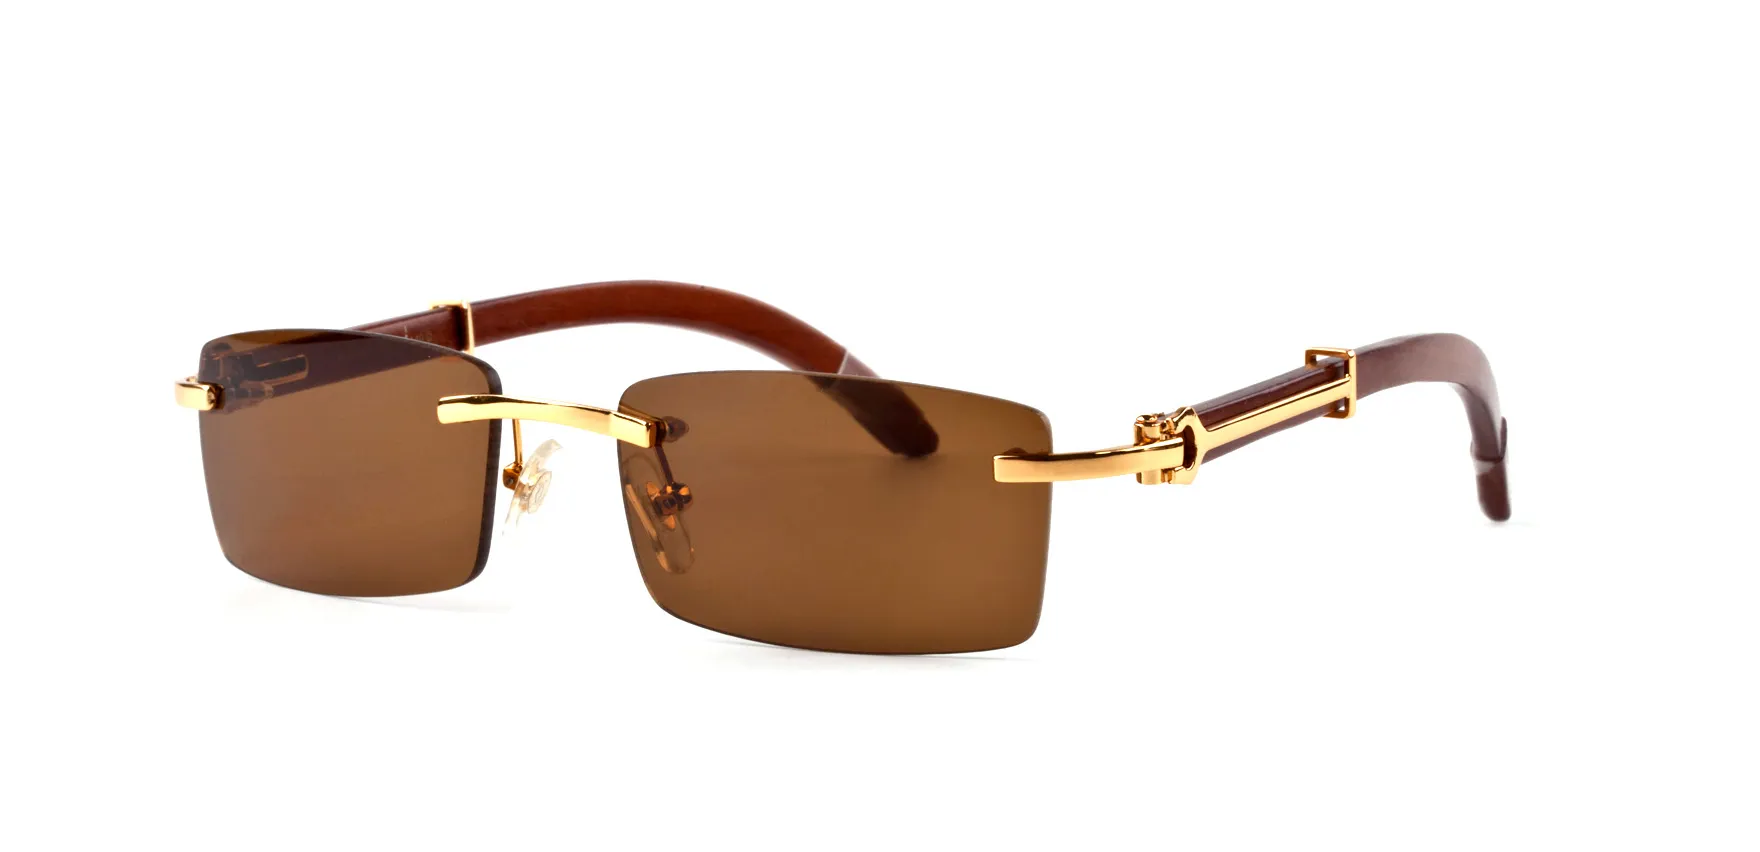 GroßhandelNeue Ankunft 2018 Markensonnenbrille für Männer Frauen Büffelhornbrille randlose Designer-Sonnenbrille aus Bambusholz mit Box-Etui-Lünetten